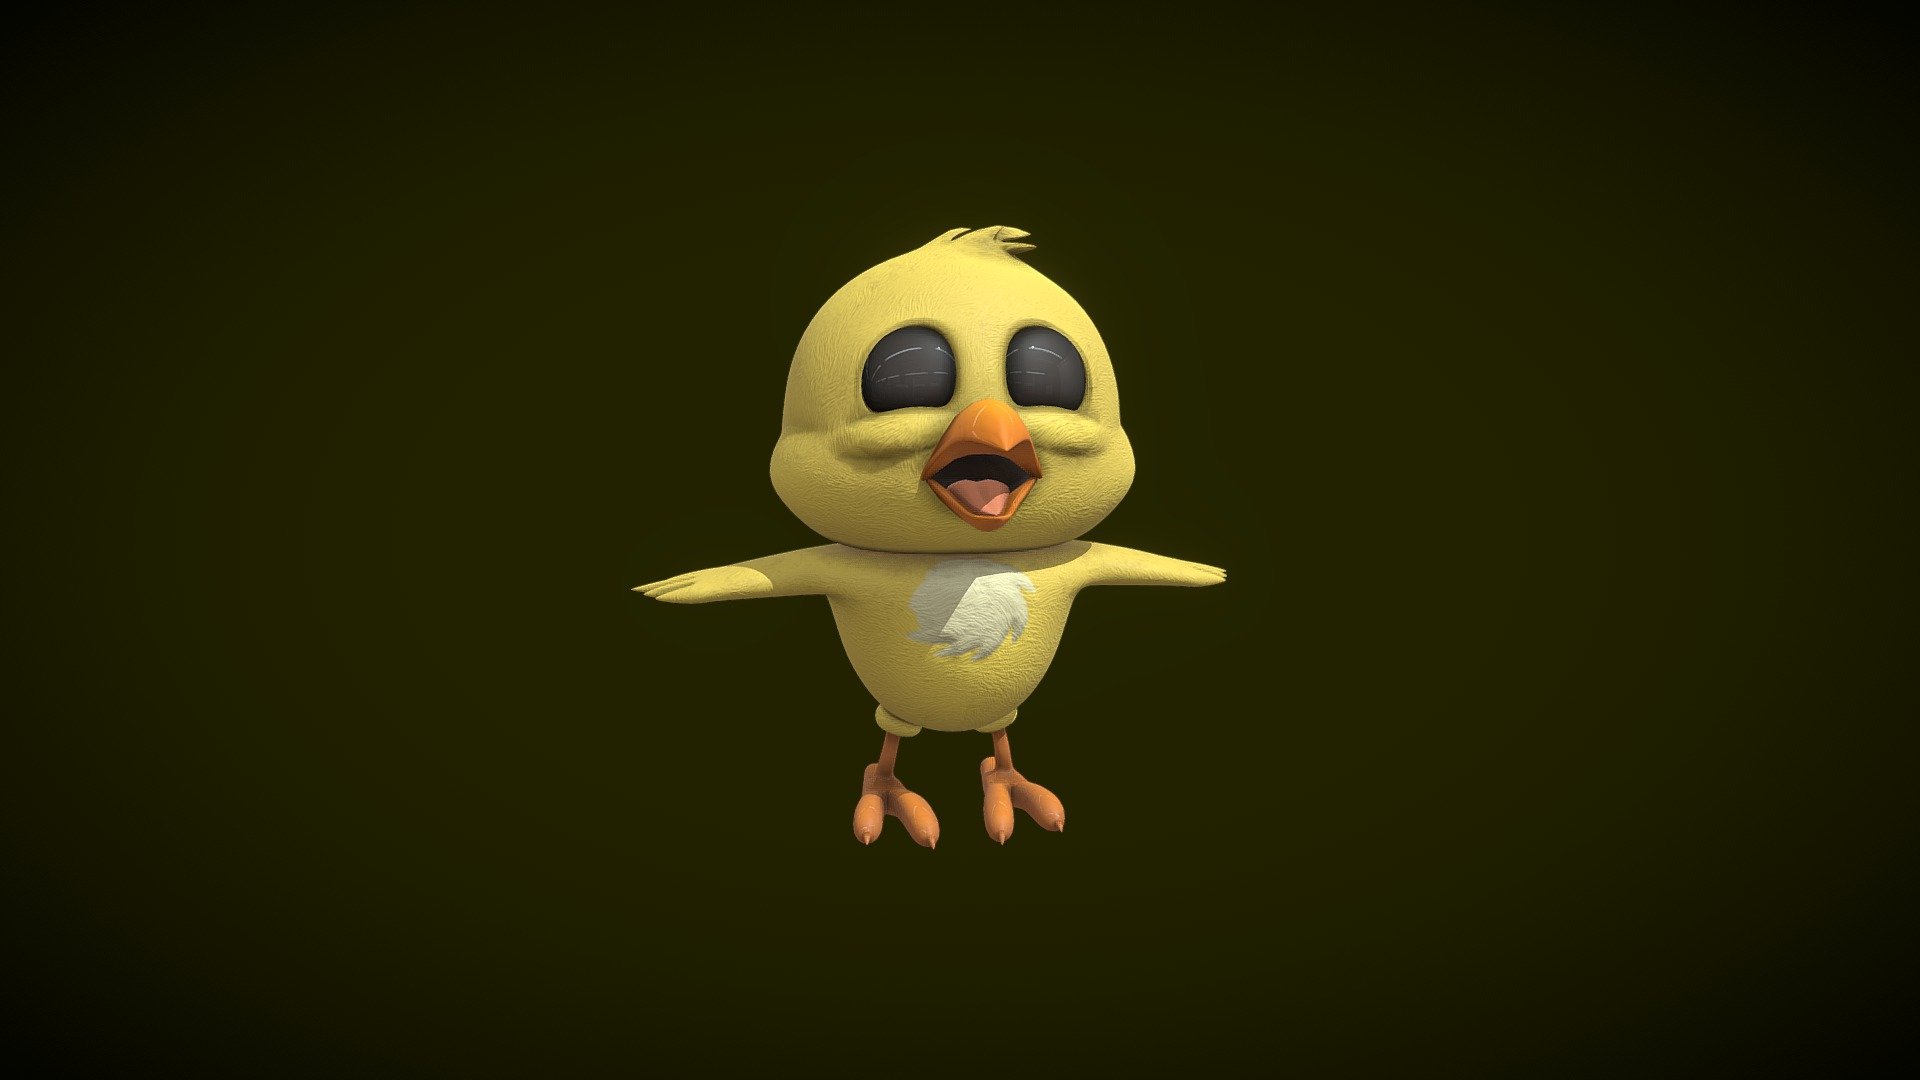 Chick - 3D model by kewag.swiss 3d model